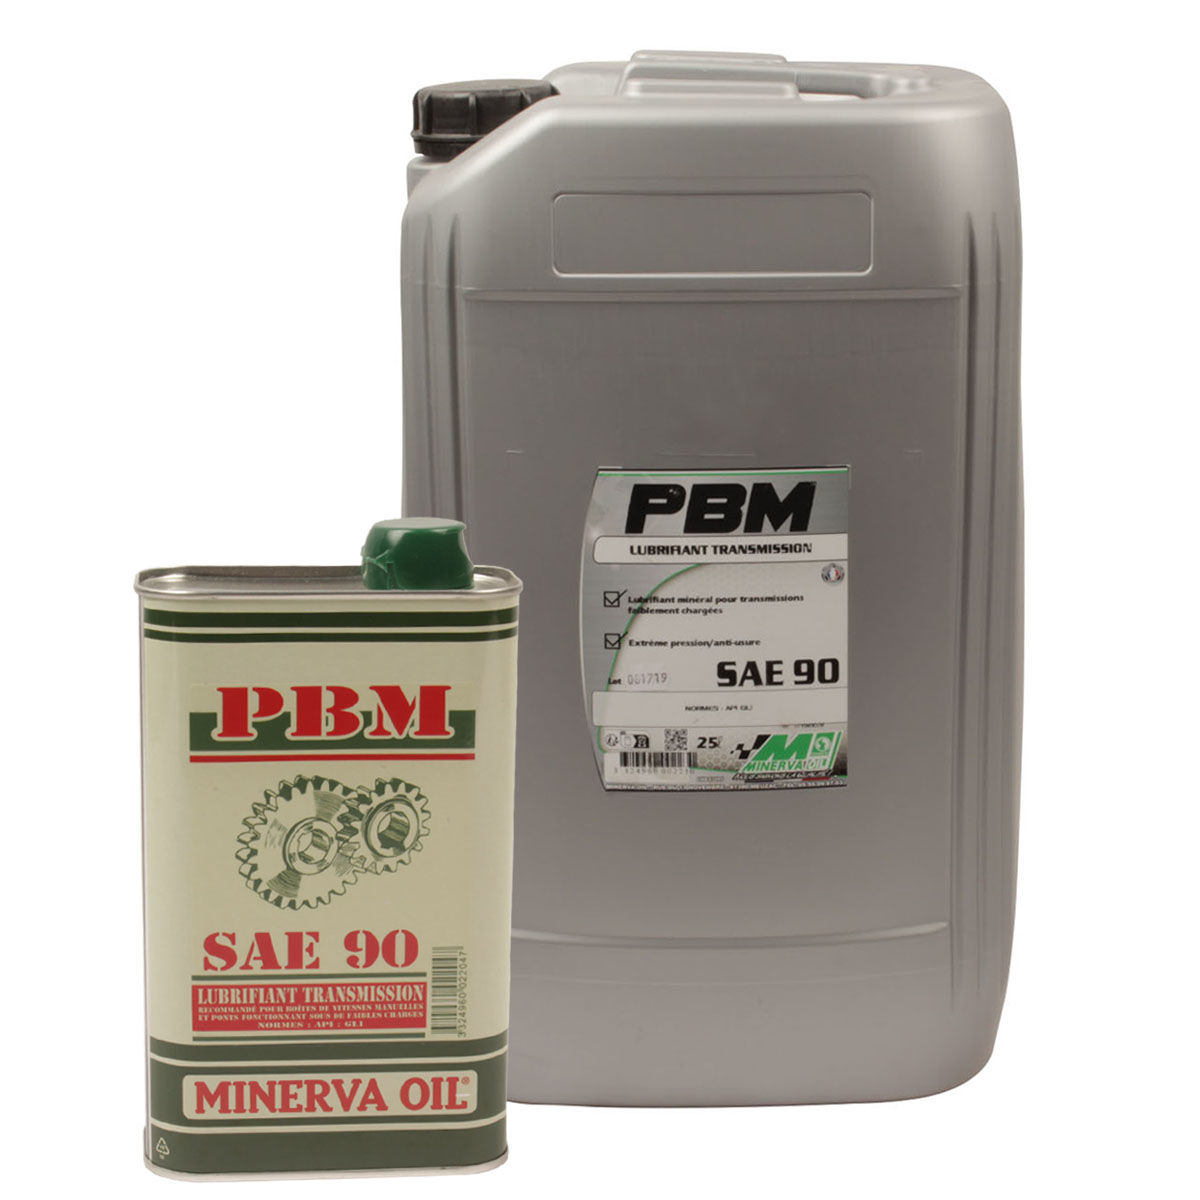 Lubrifiant huile minéral 80W-90 pour boîtes et ponts PBH EP